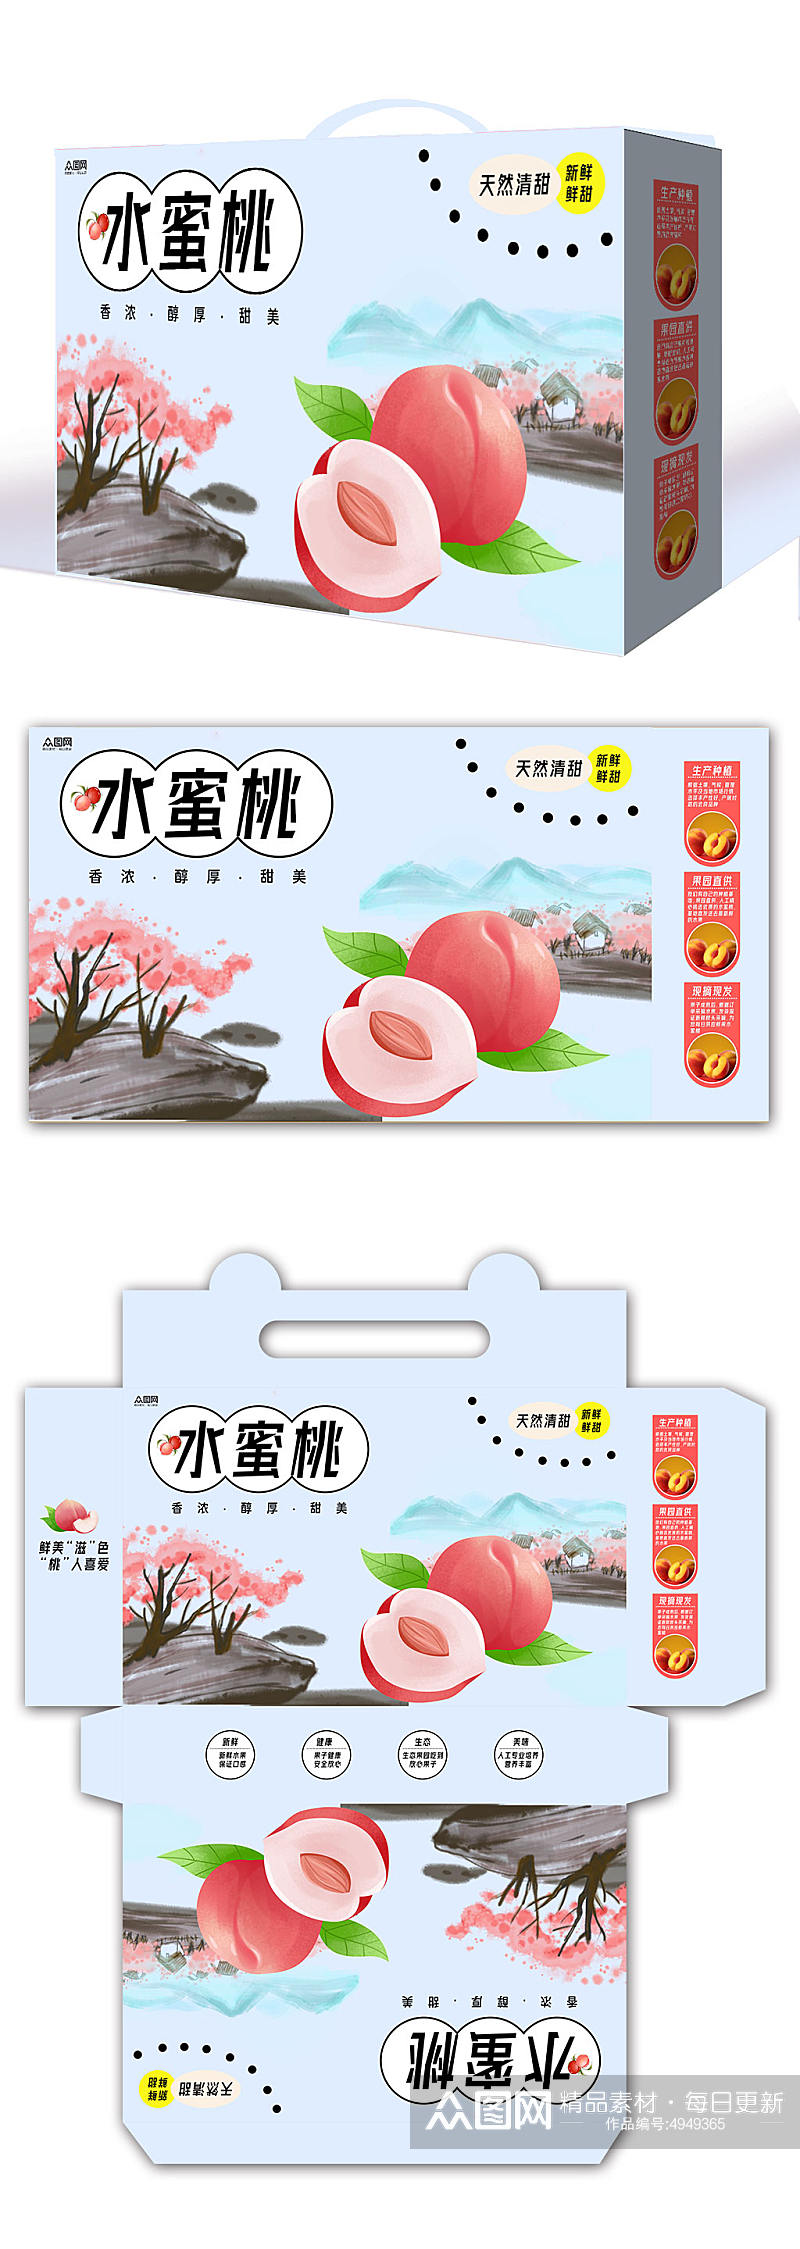 桃子水蜜桃水果礼盒包装设计素材